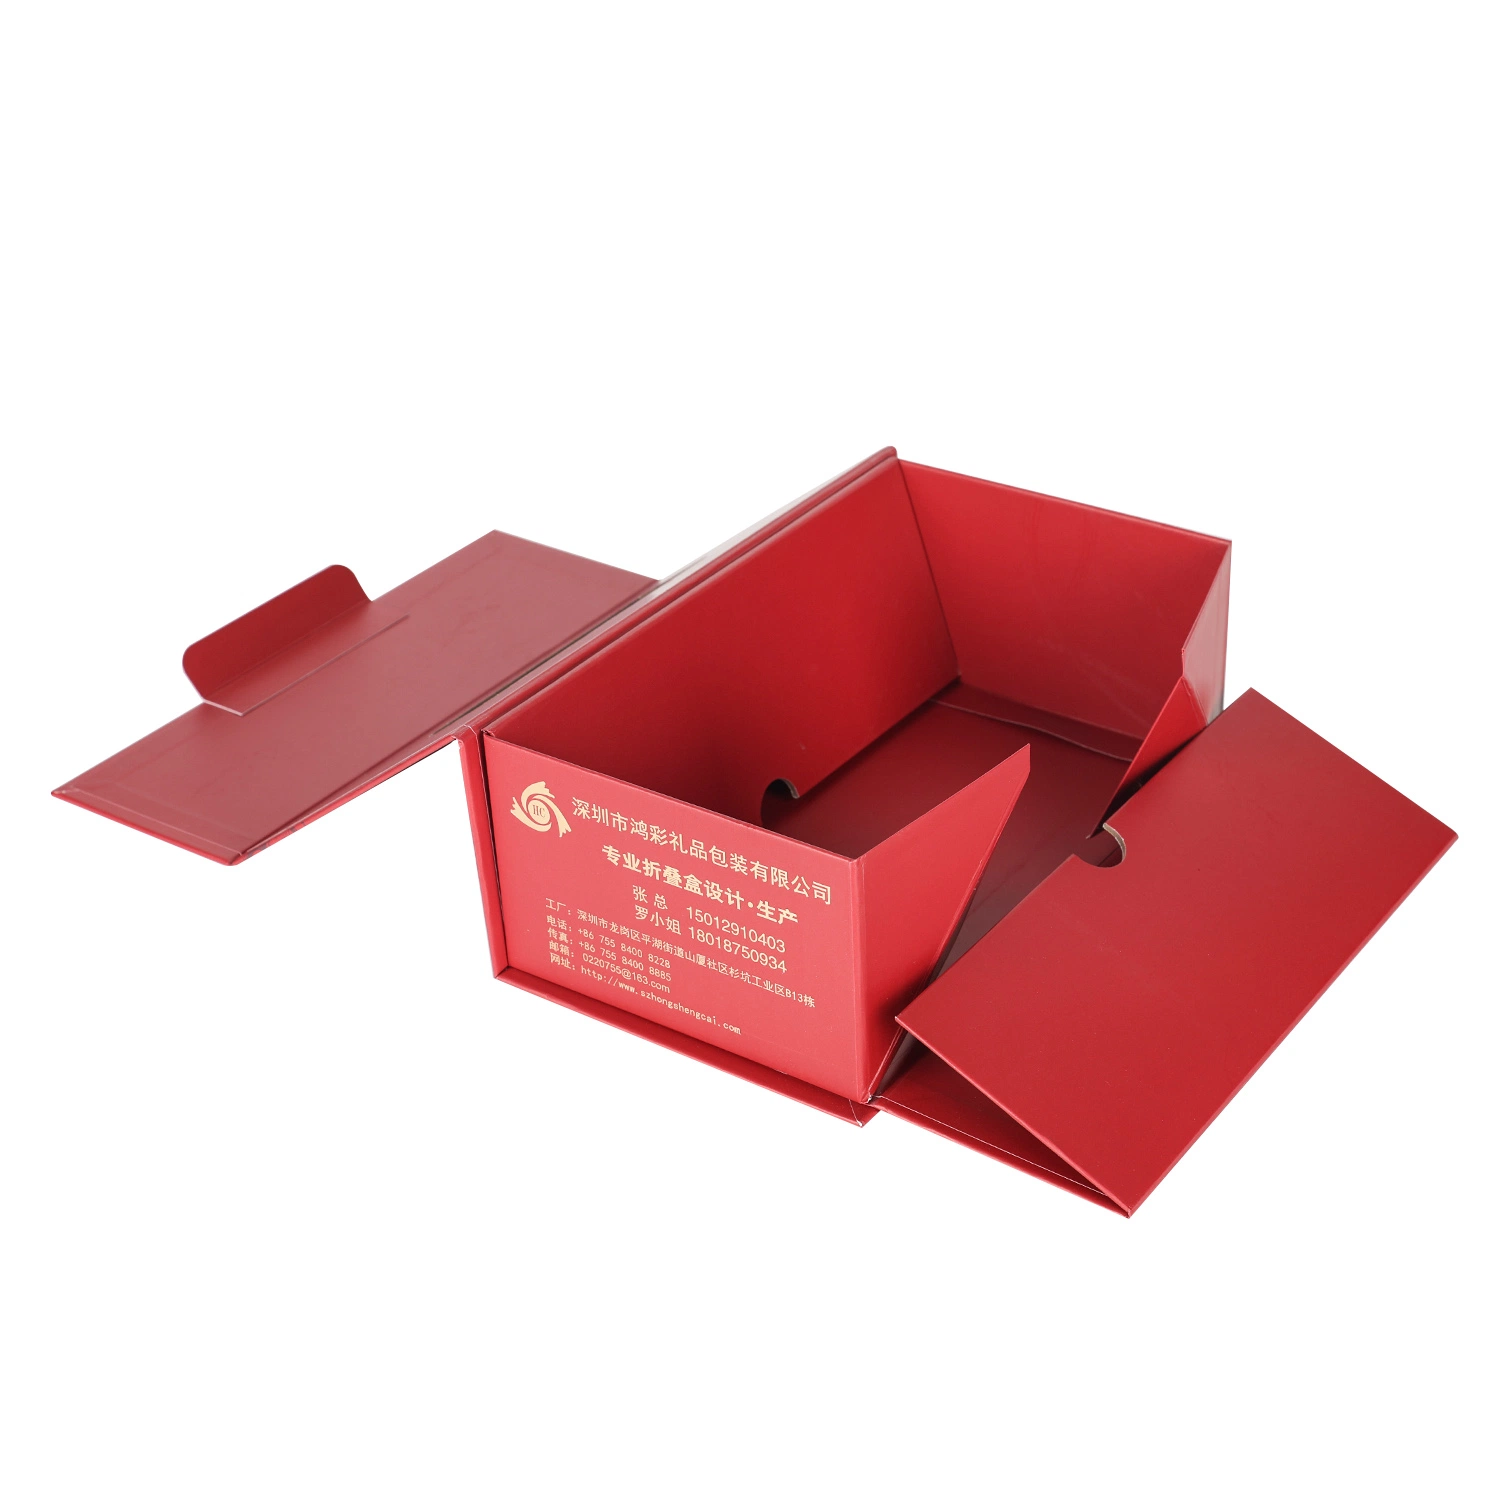 Benutzerdefinierte Lagerung Verpackung Geschenk Rechteck Doppel Falte Farbe Karton Papier Verpackungskasten